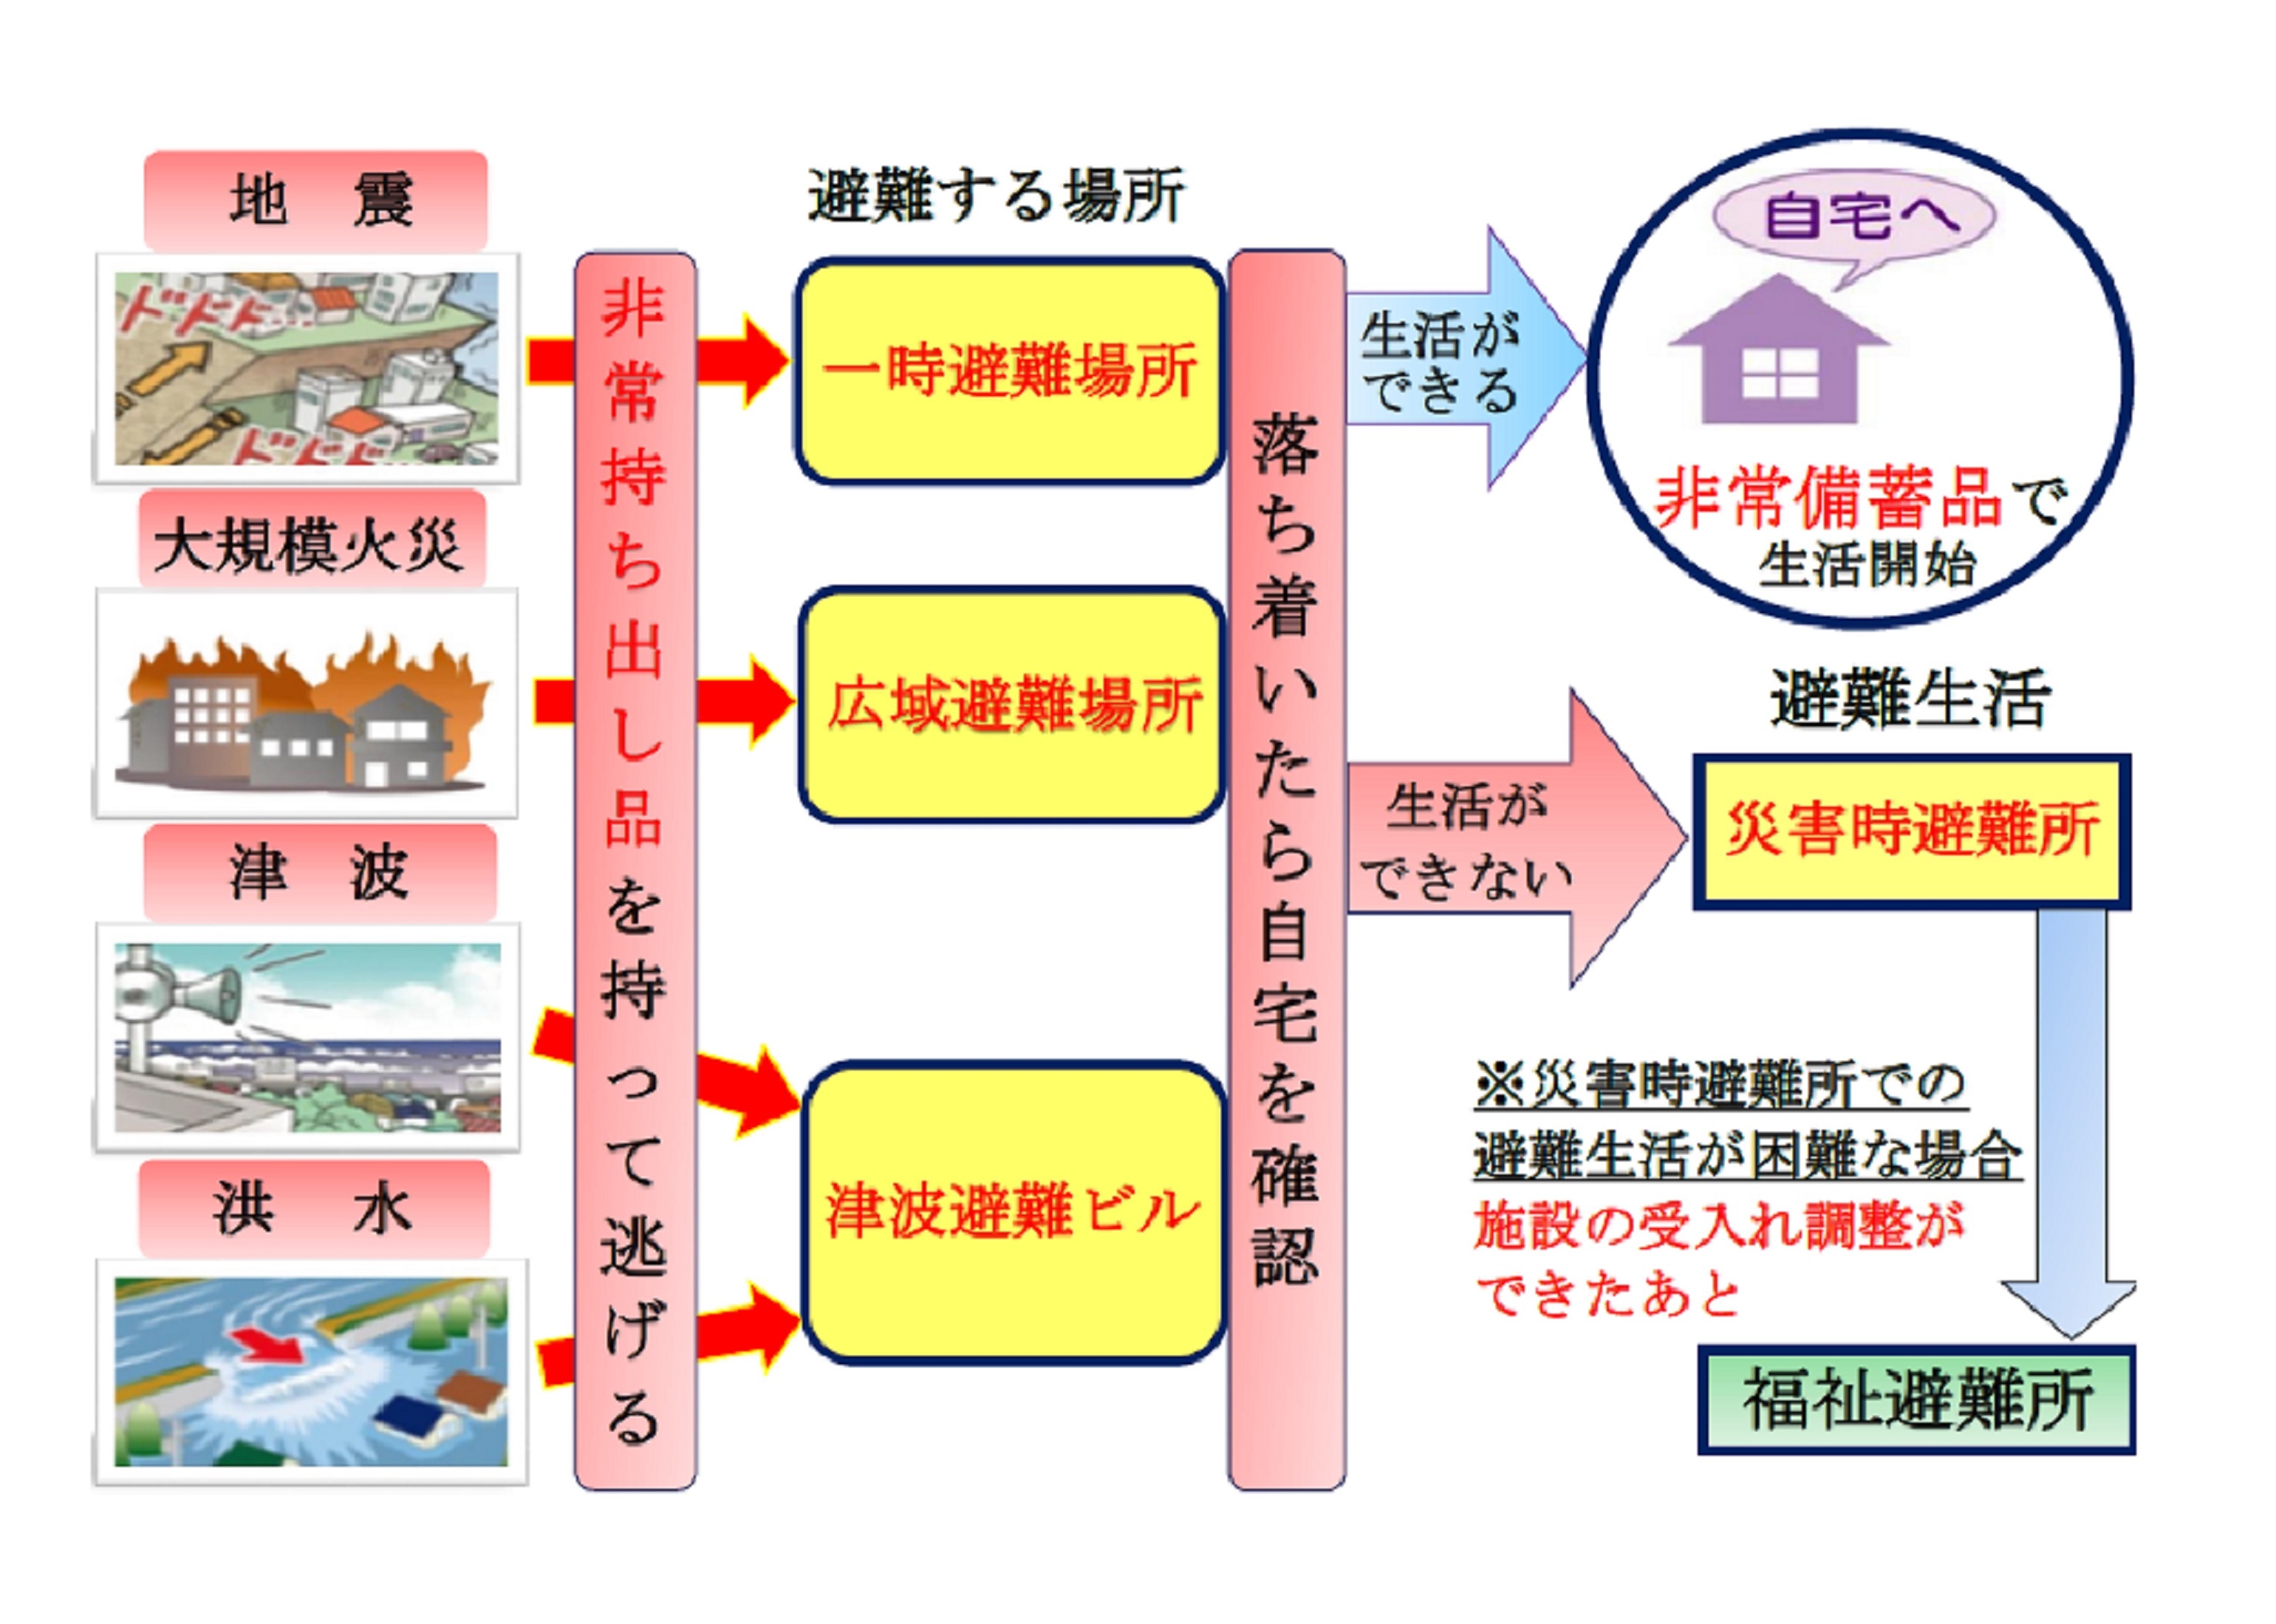 大阪市住之江区 災害が来る前に 避難場所 避難所 を確認しましょう 防災のお知らせ 防災のお願い